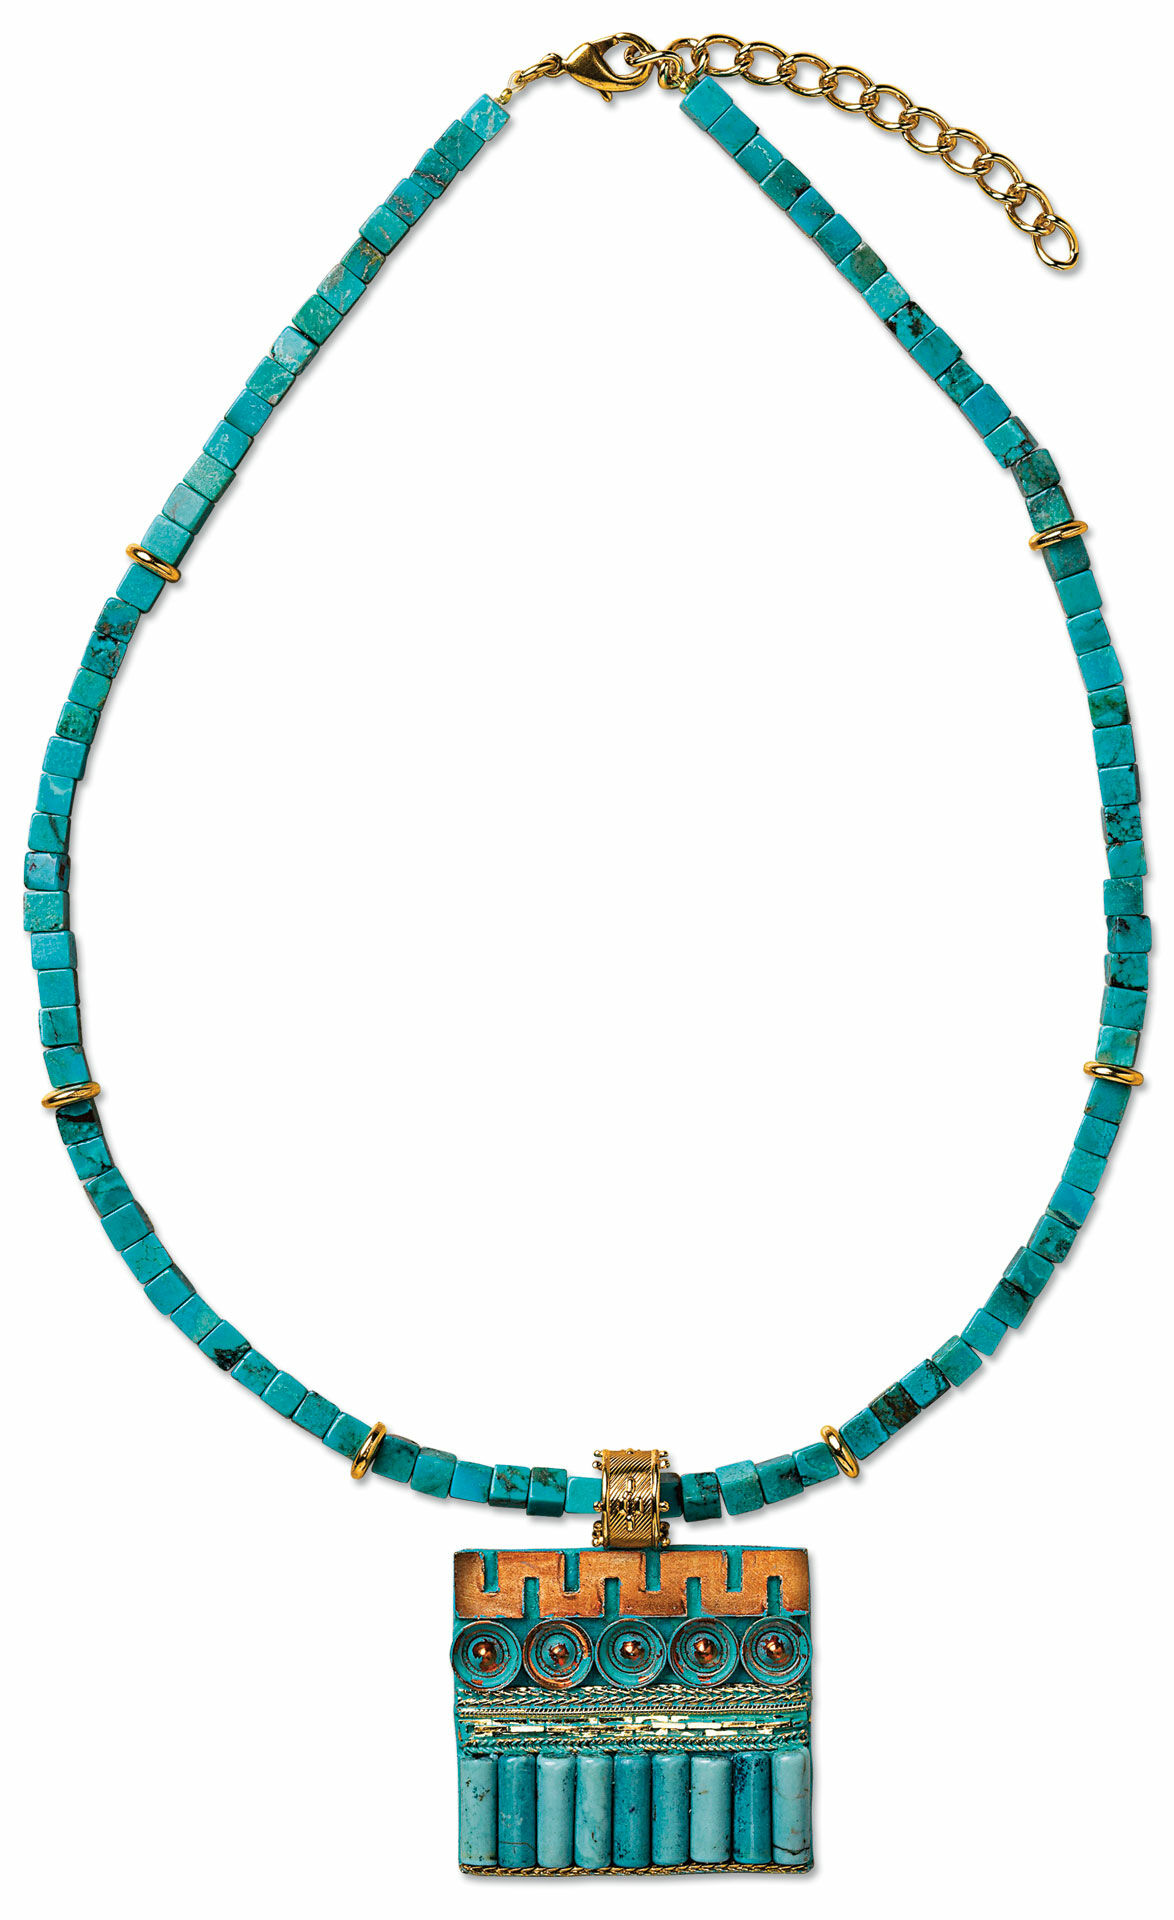 Necklace "Nile" by Petra Waszak